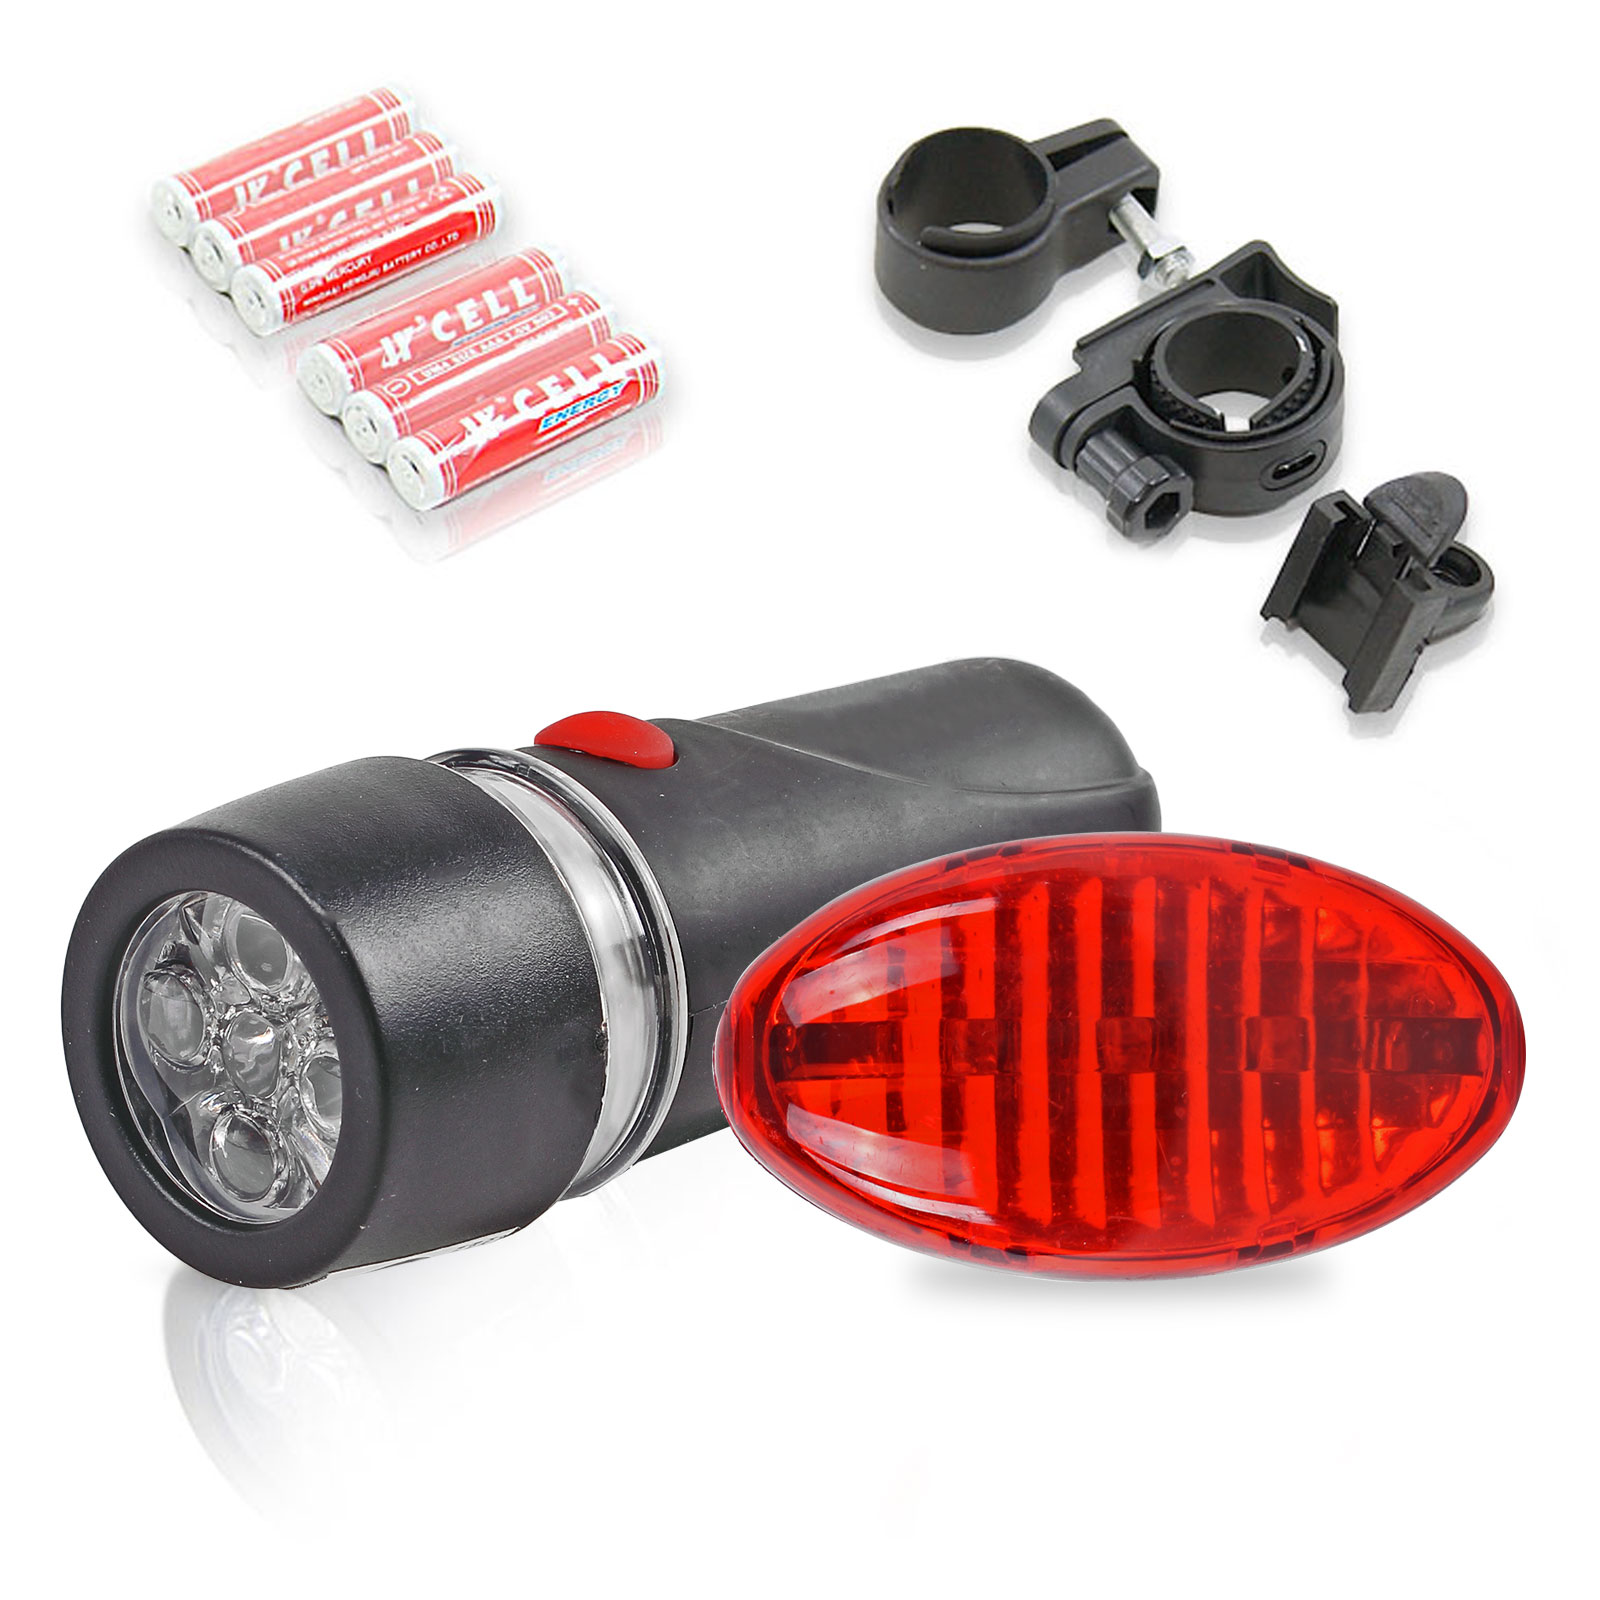 LED Fahrradbeleuchtung Set für Vorne und Hinten inkl. Batterien & Haltesatz